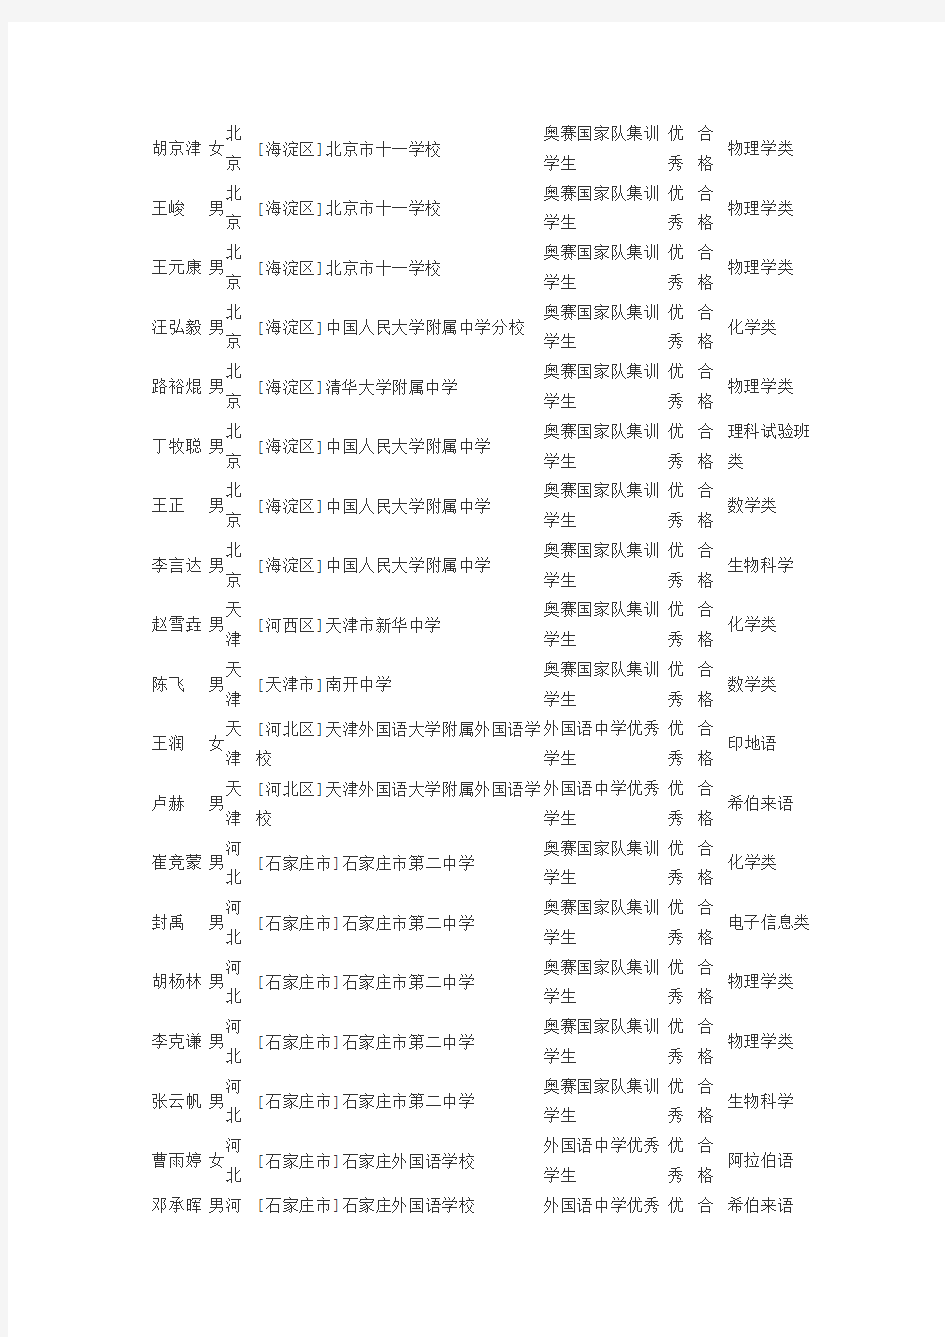 2015北京大学保送录取名单